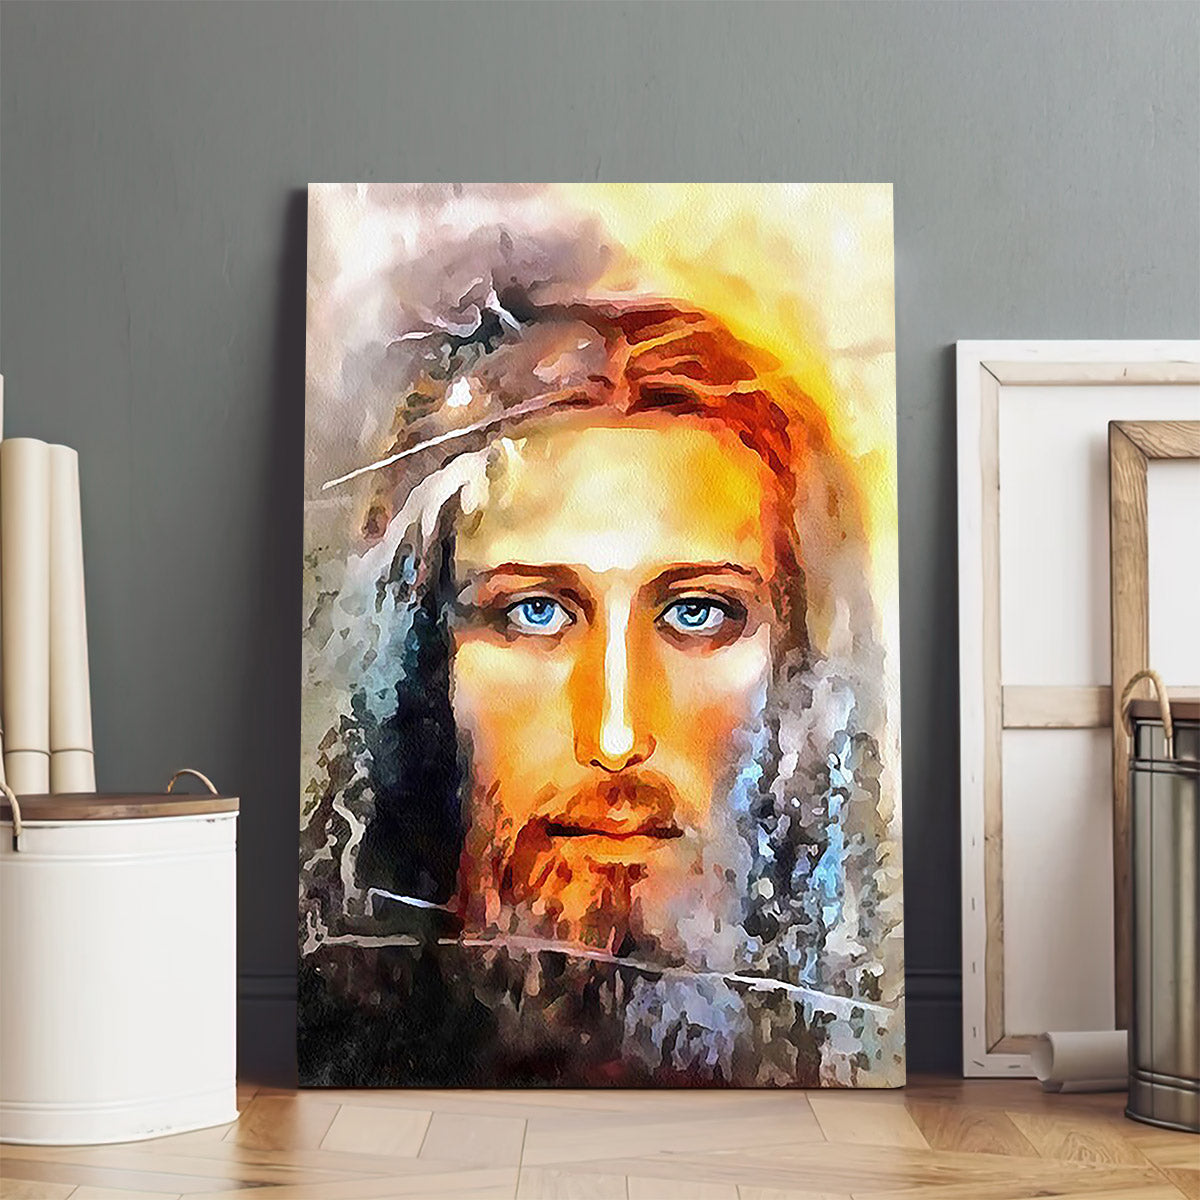 Jesus Christ Portrait Painting Canvas - Jesus Portrait Picture - Religious Gift - Christian Wall Art Decor